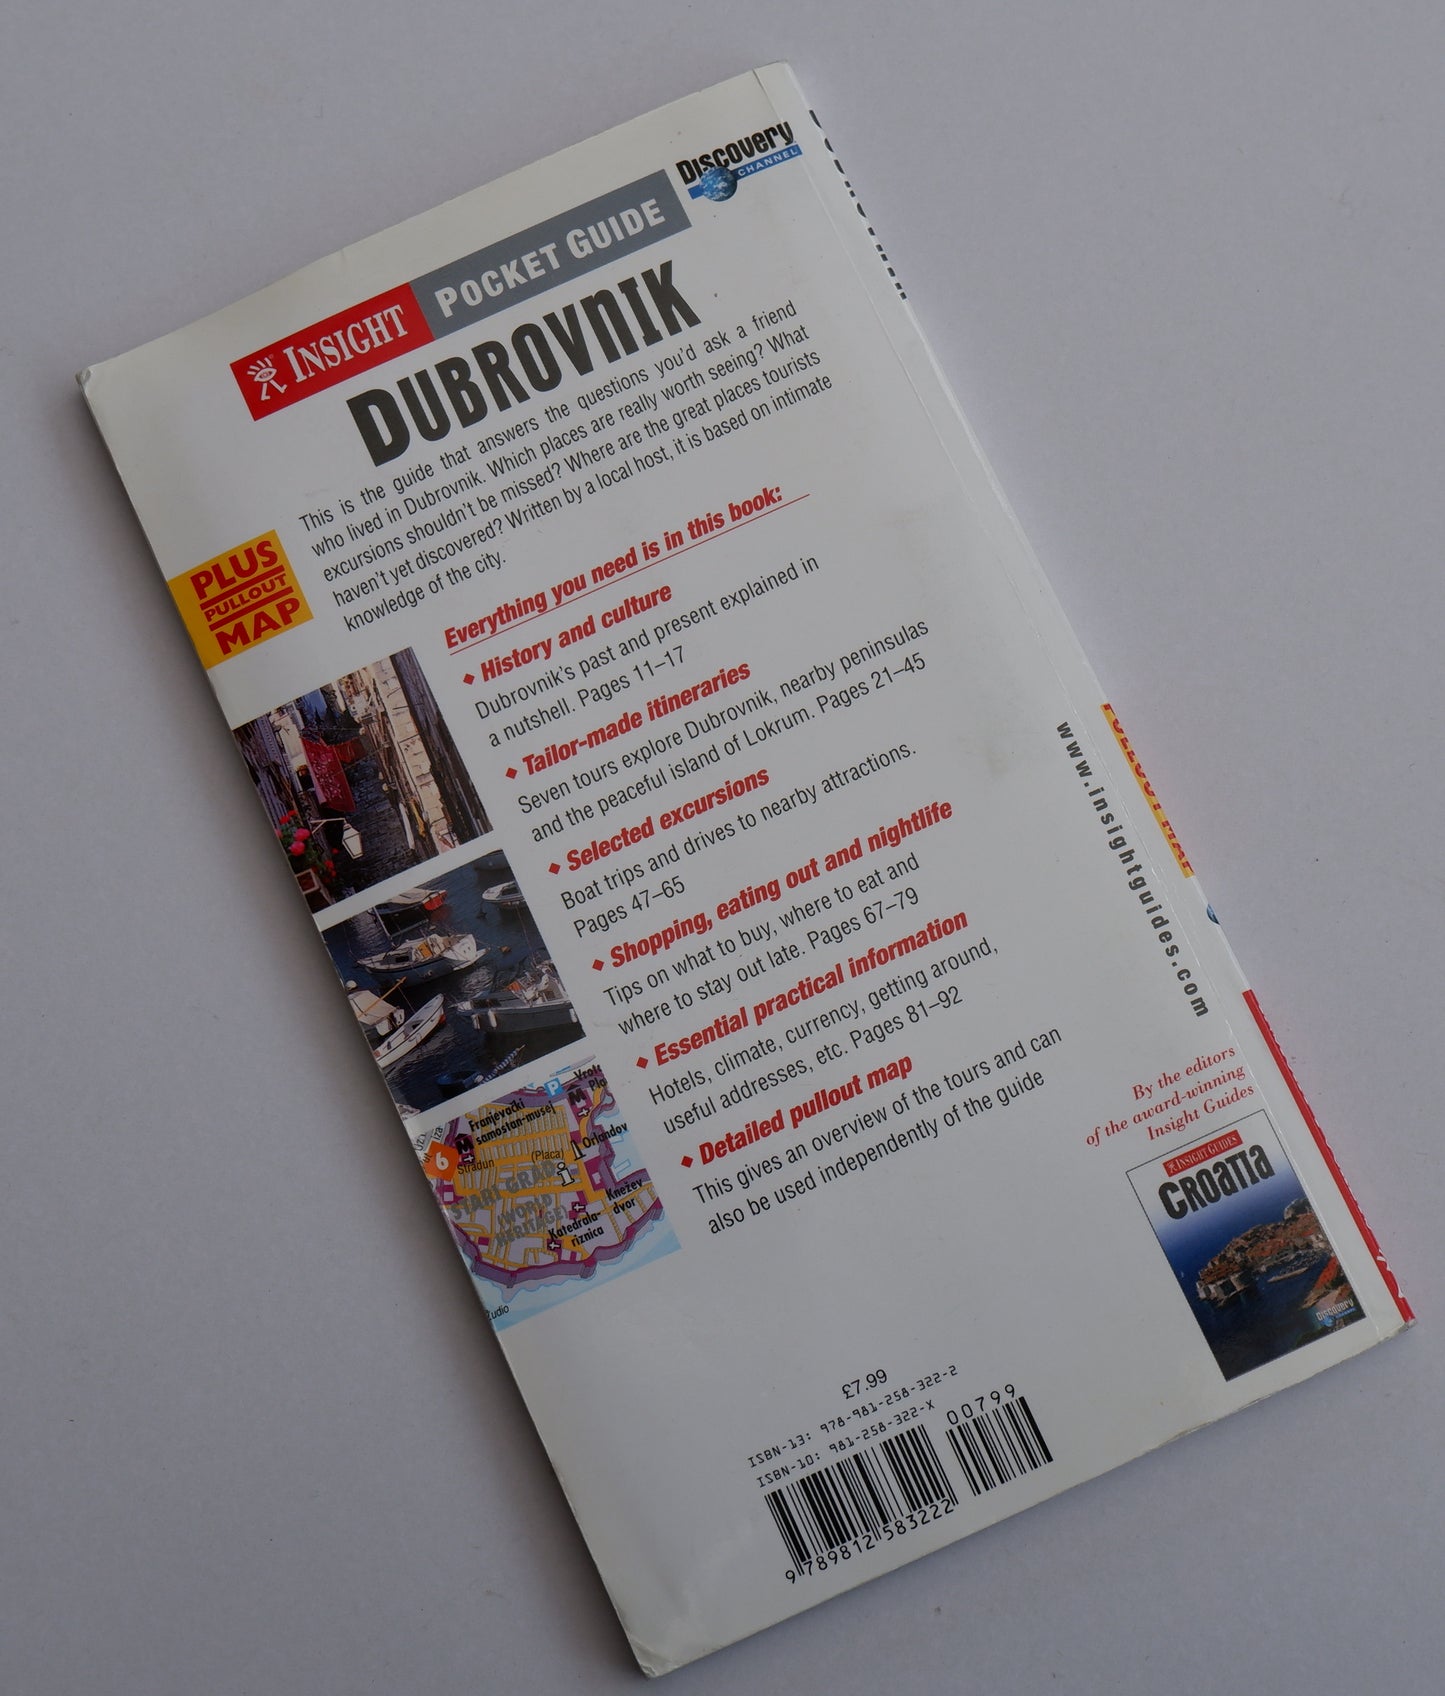 Dubrovnik - Pocket Guide